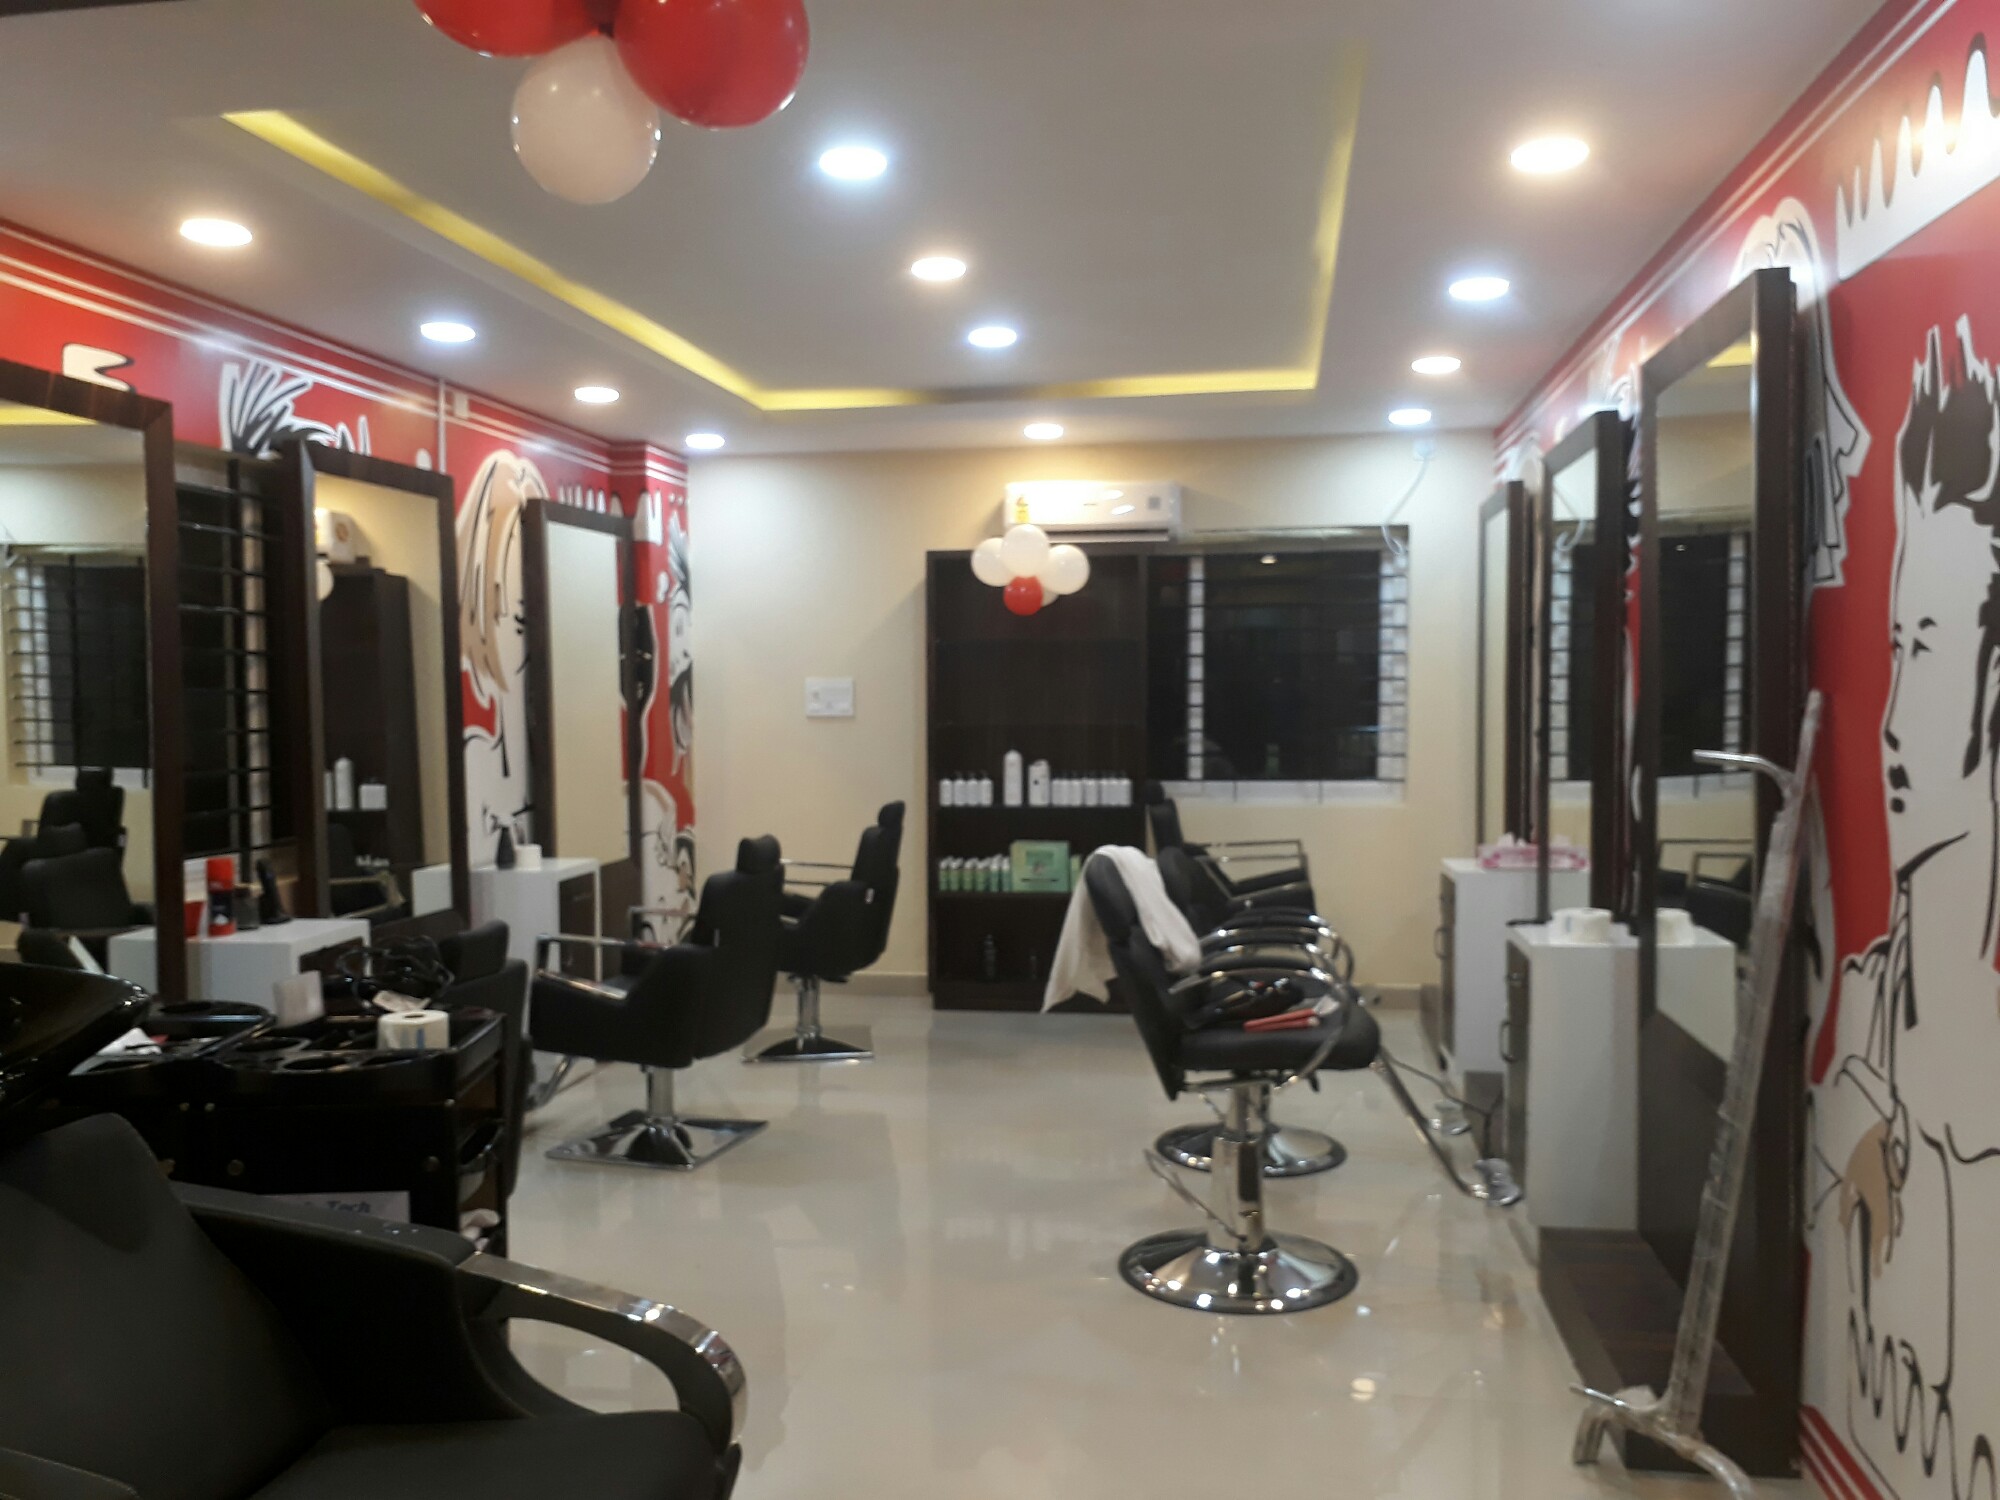 Jawed Habib Unisex Hair & Beauty Salon in HSR Layout, Bangalore-560102 |  Sulekha Bangalore